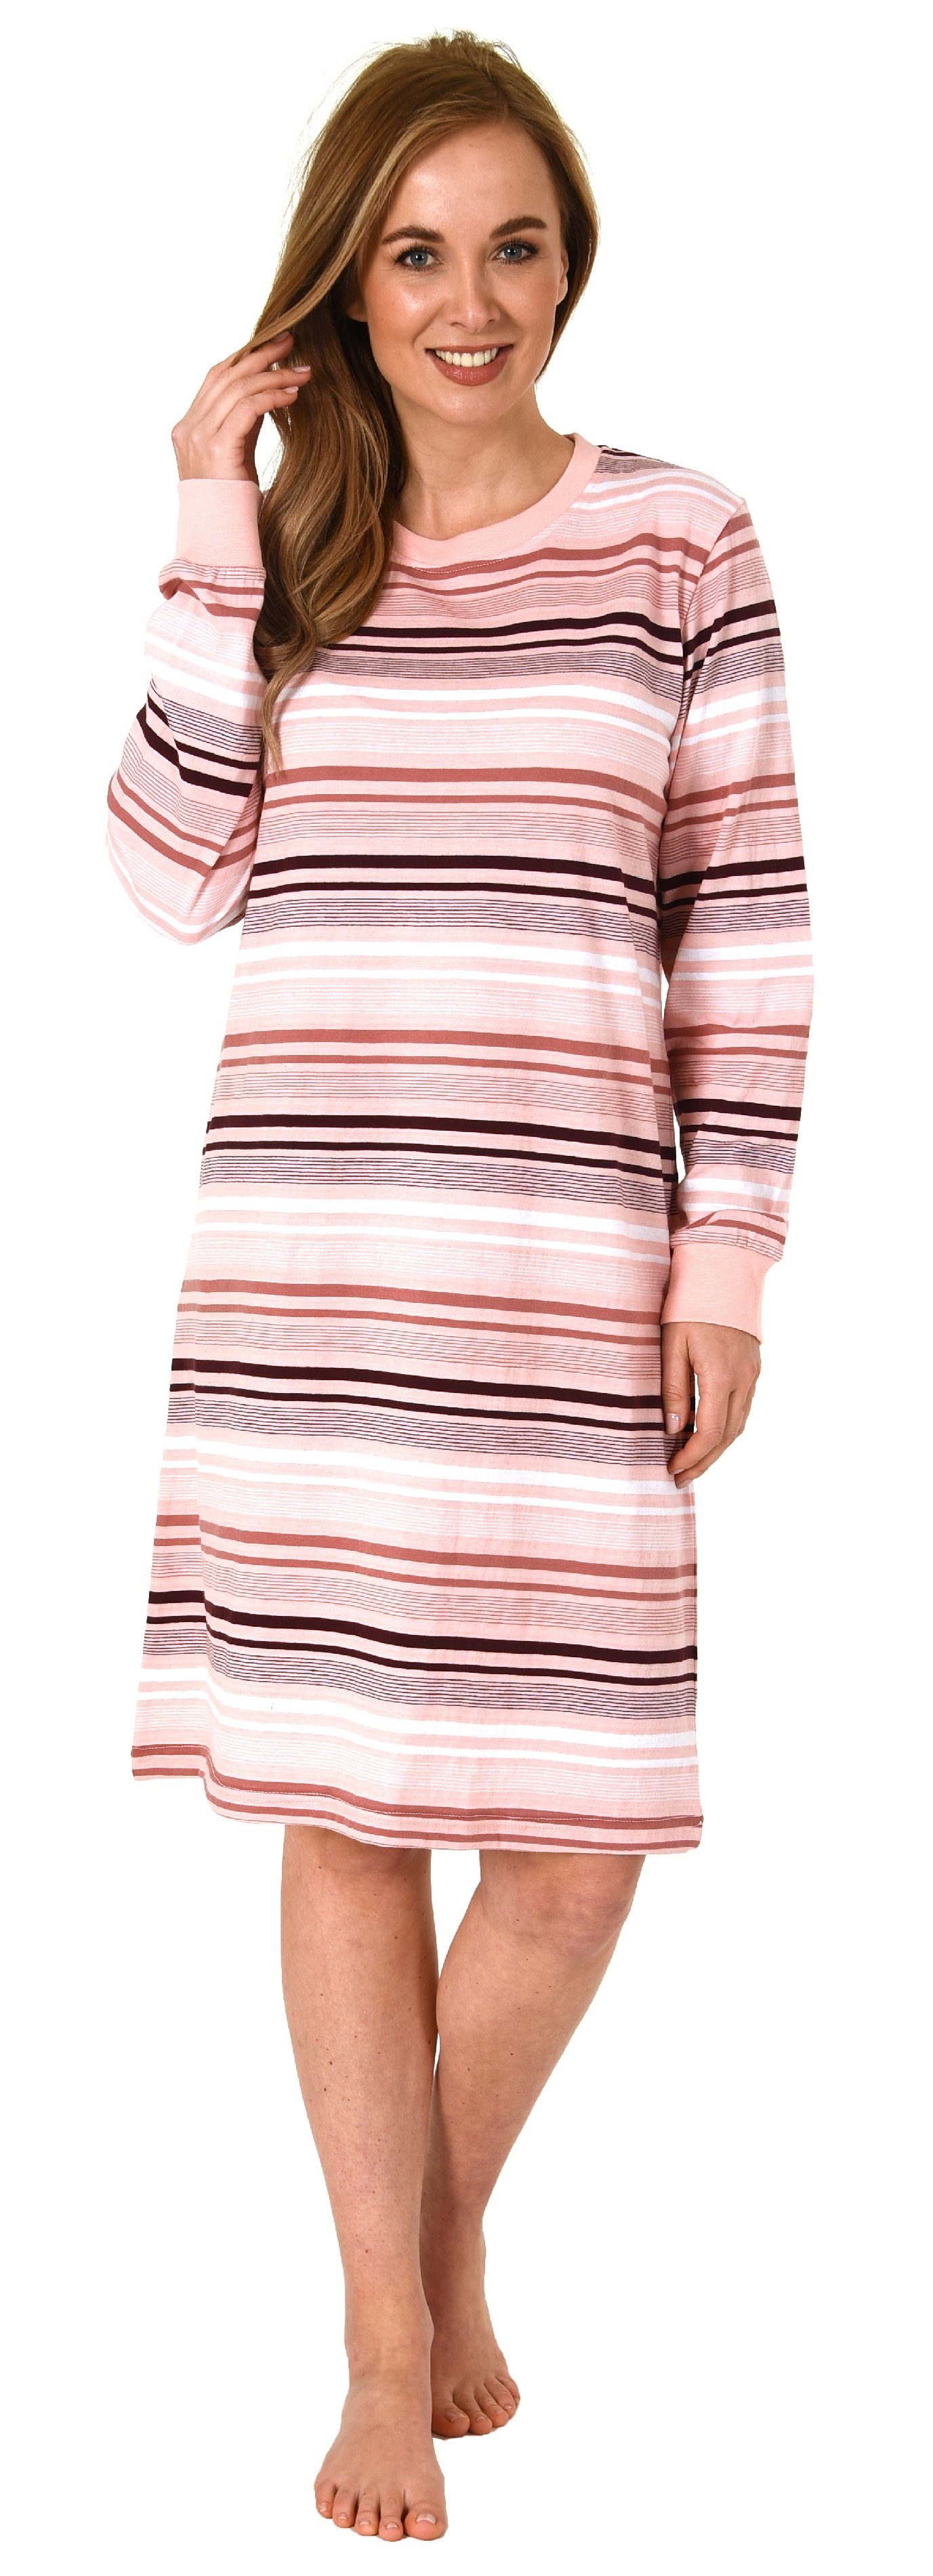 Normann Nachthemd Damen Nachthemd langarm mit Bündchen gestreift rosa auch Übergrößen - in